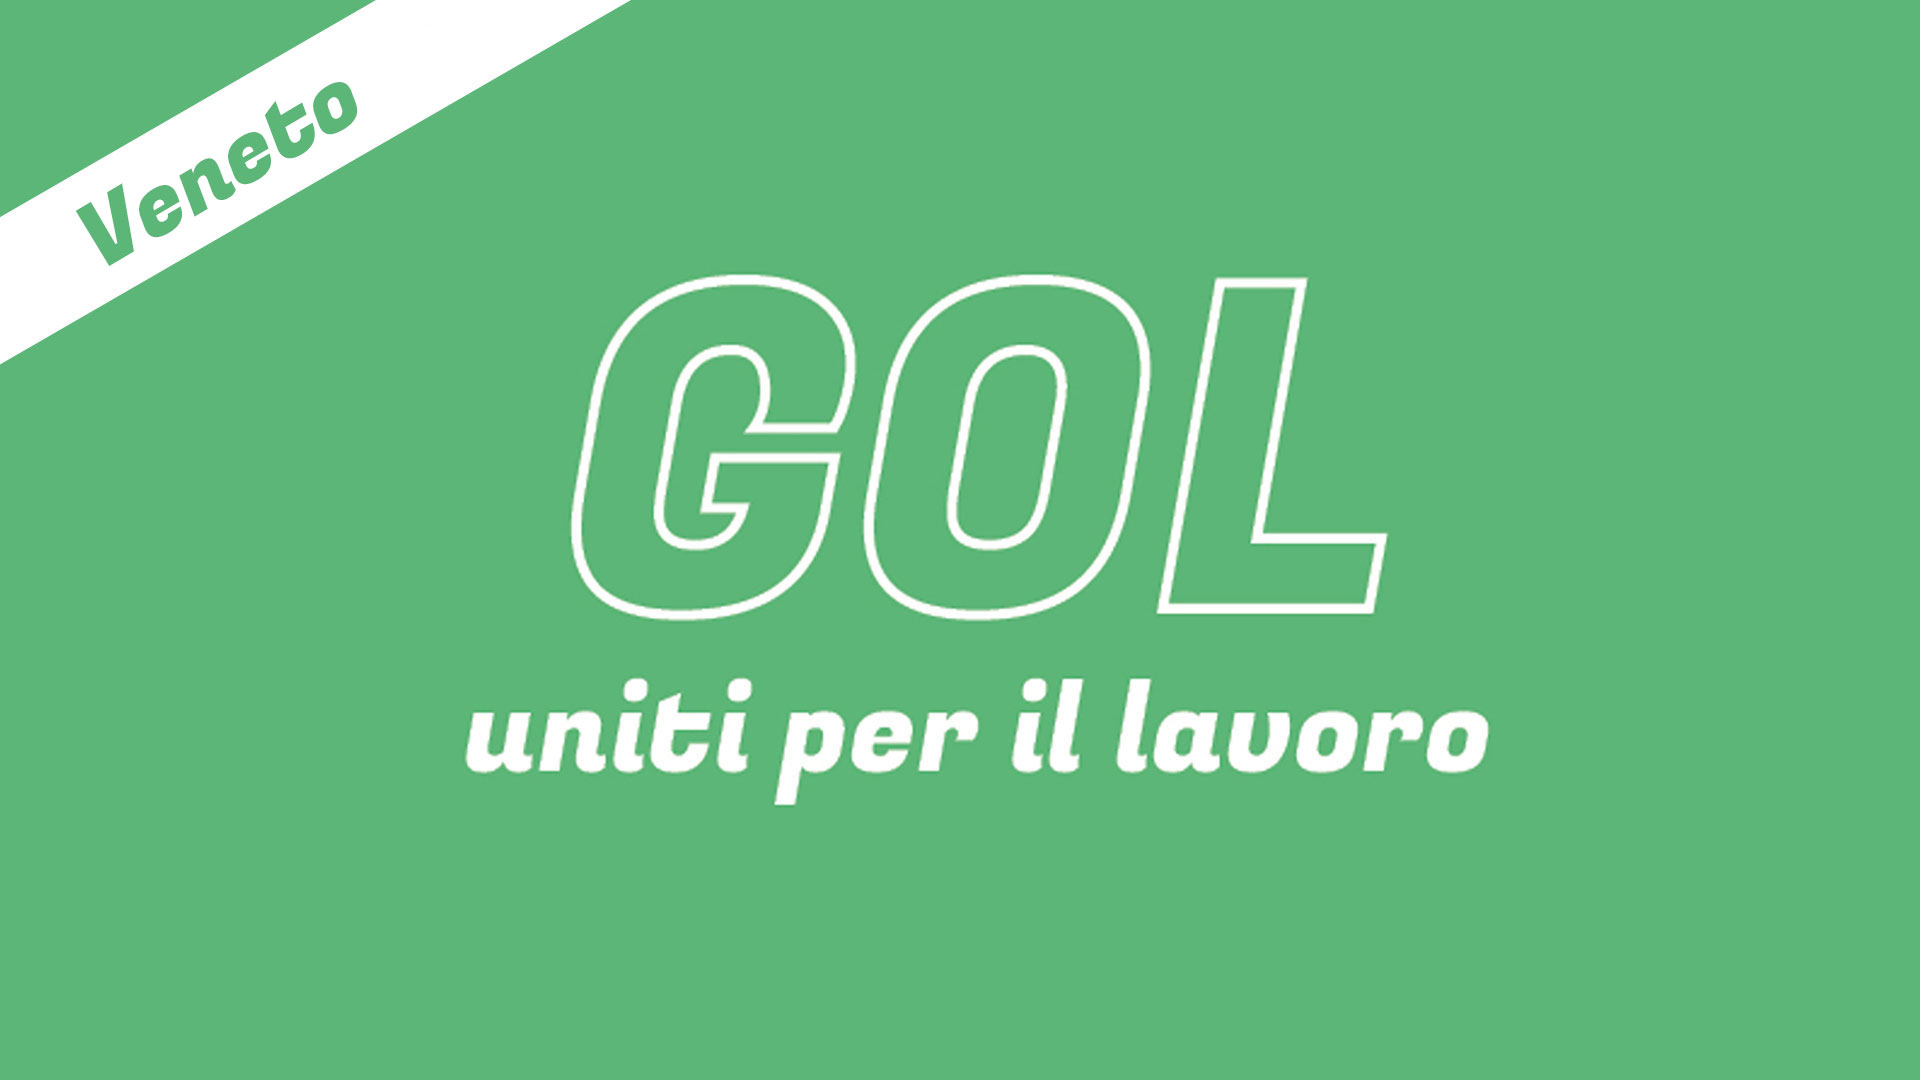 GOL! Veneto – Uniti per il lavoro